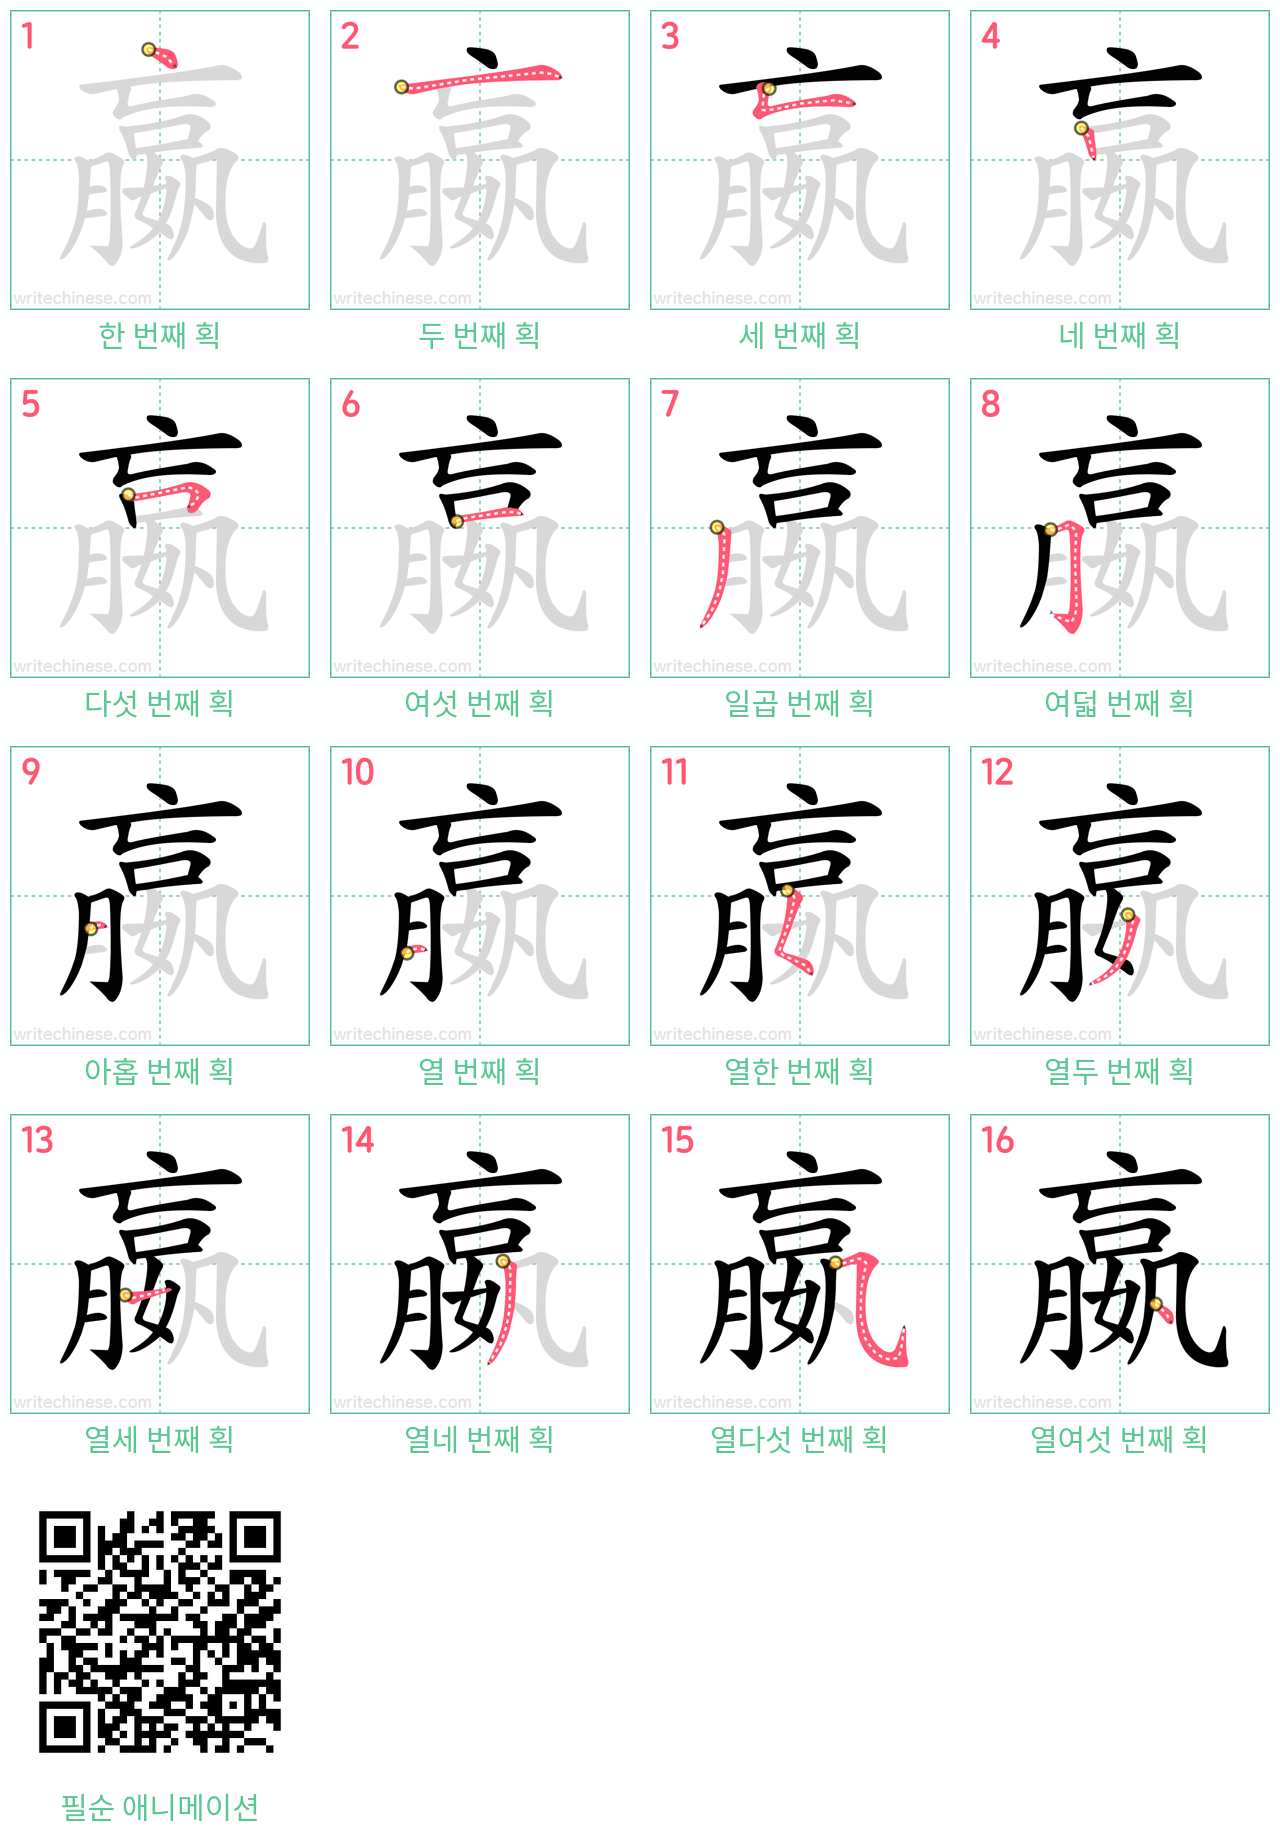 嬴 step-by-step stroke order diagrams